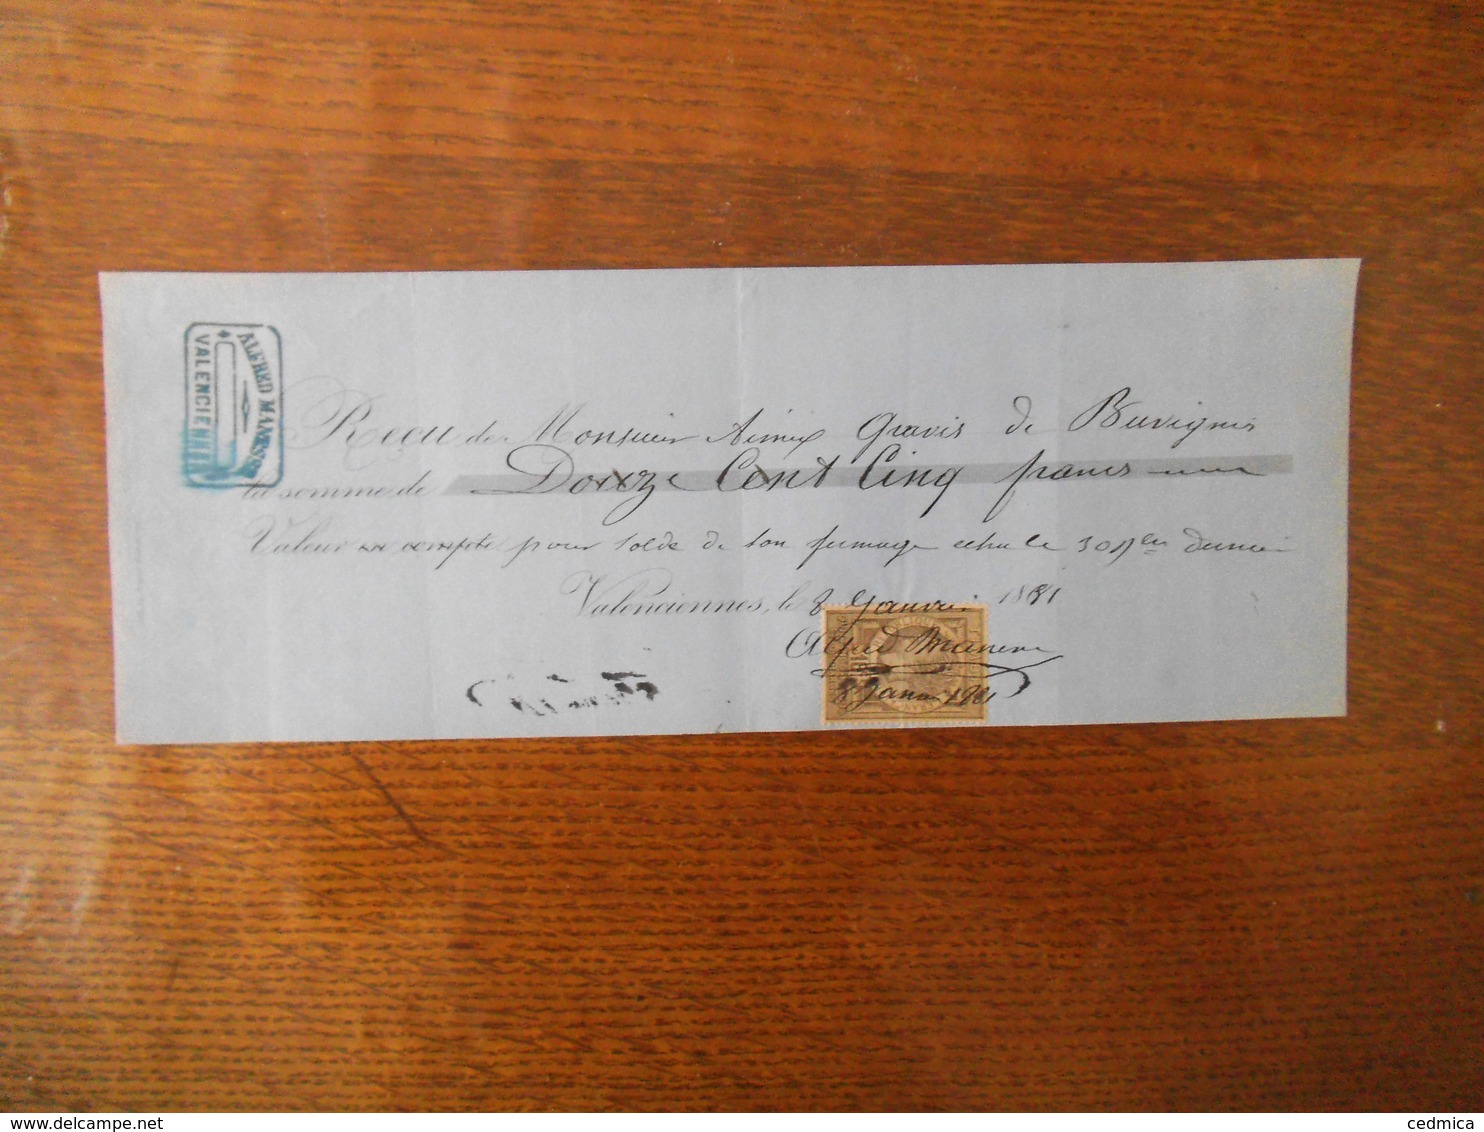 VALENCIENNES ALFRED MANESSE RECU DE MONSIEUR GRAVIS DE BUVIGNIES DU 8 JANVIER 1881 TIMBRE QUITTANCES - Manuscrits